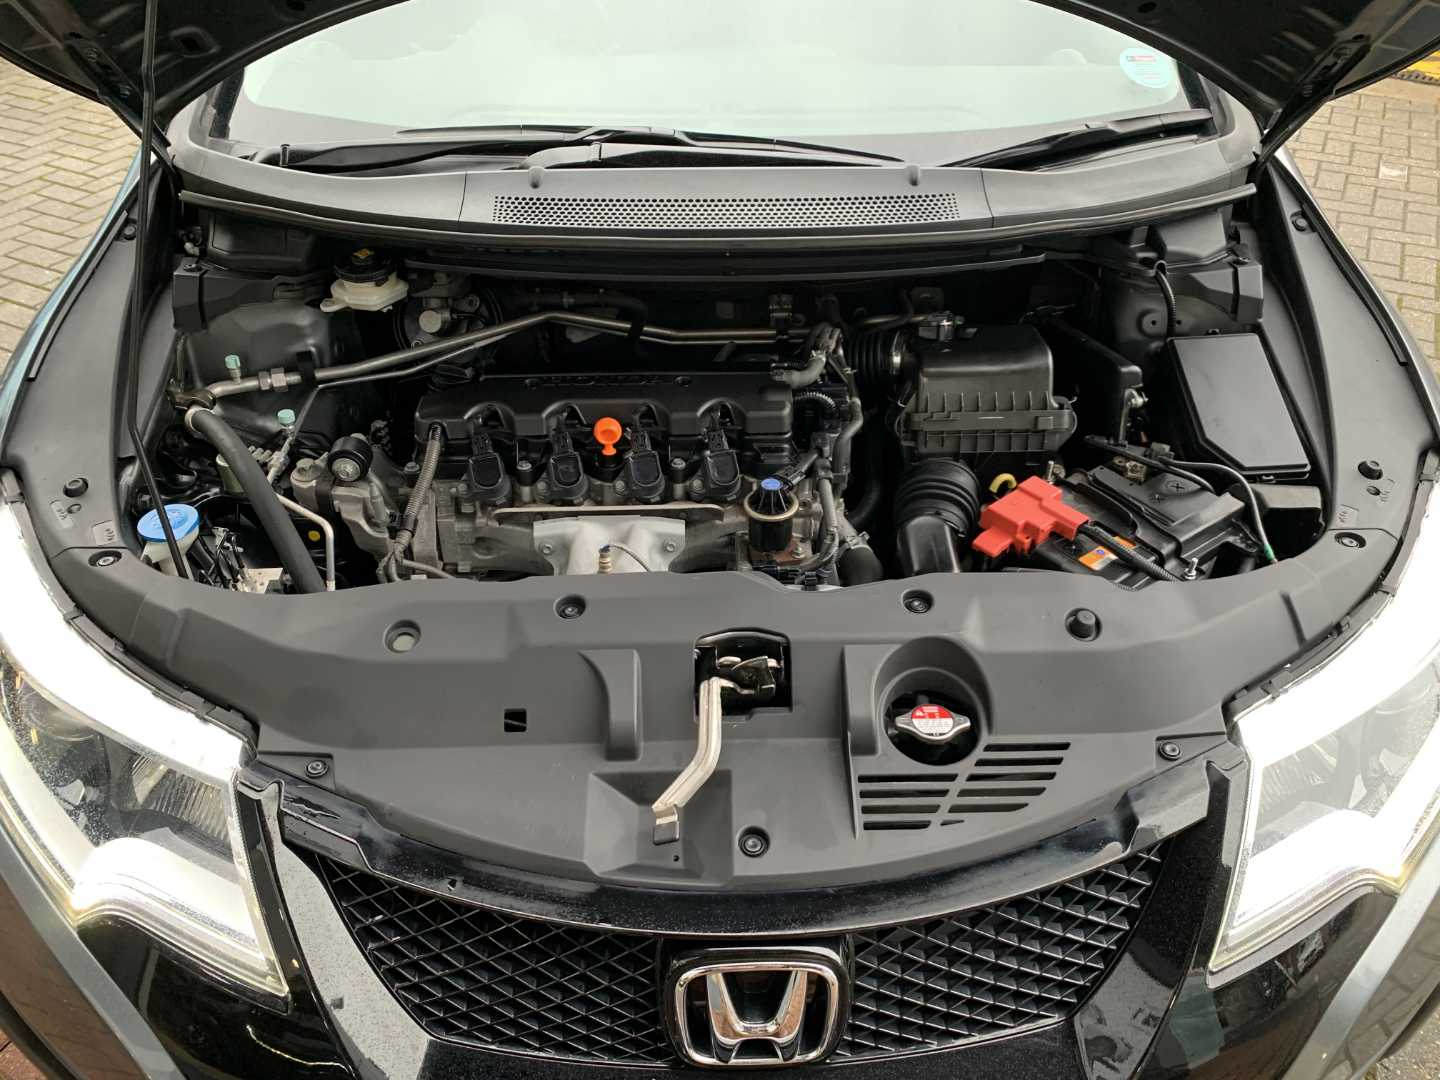 Honda CIVIC 1.8 i-VTEC SR 5dr Auto - Image 20